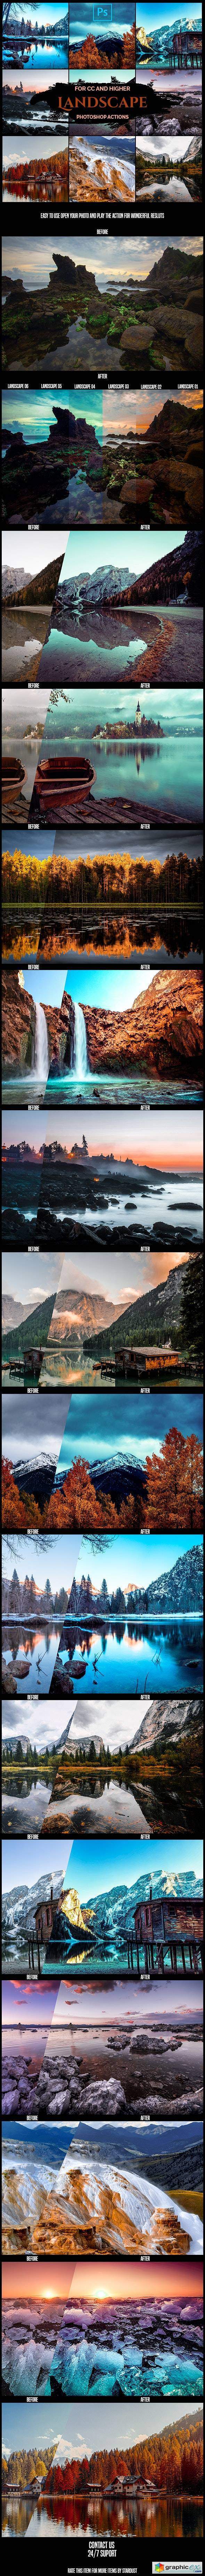 Landscape - Pro Photoshop Actions